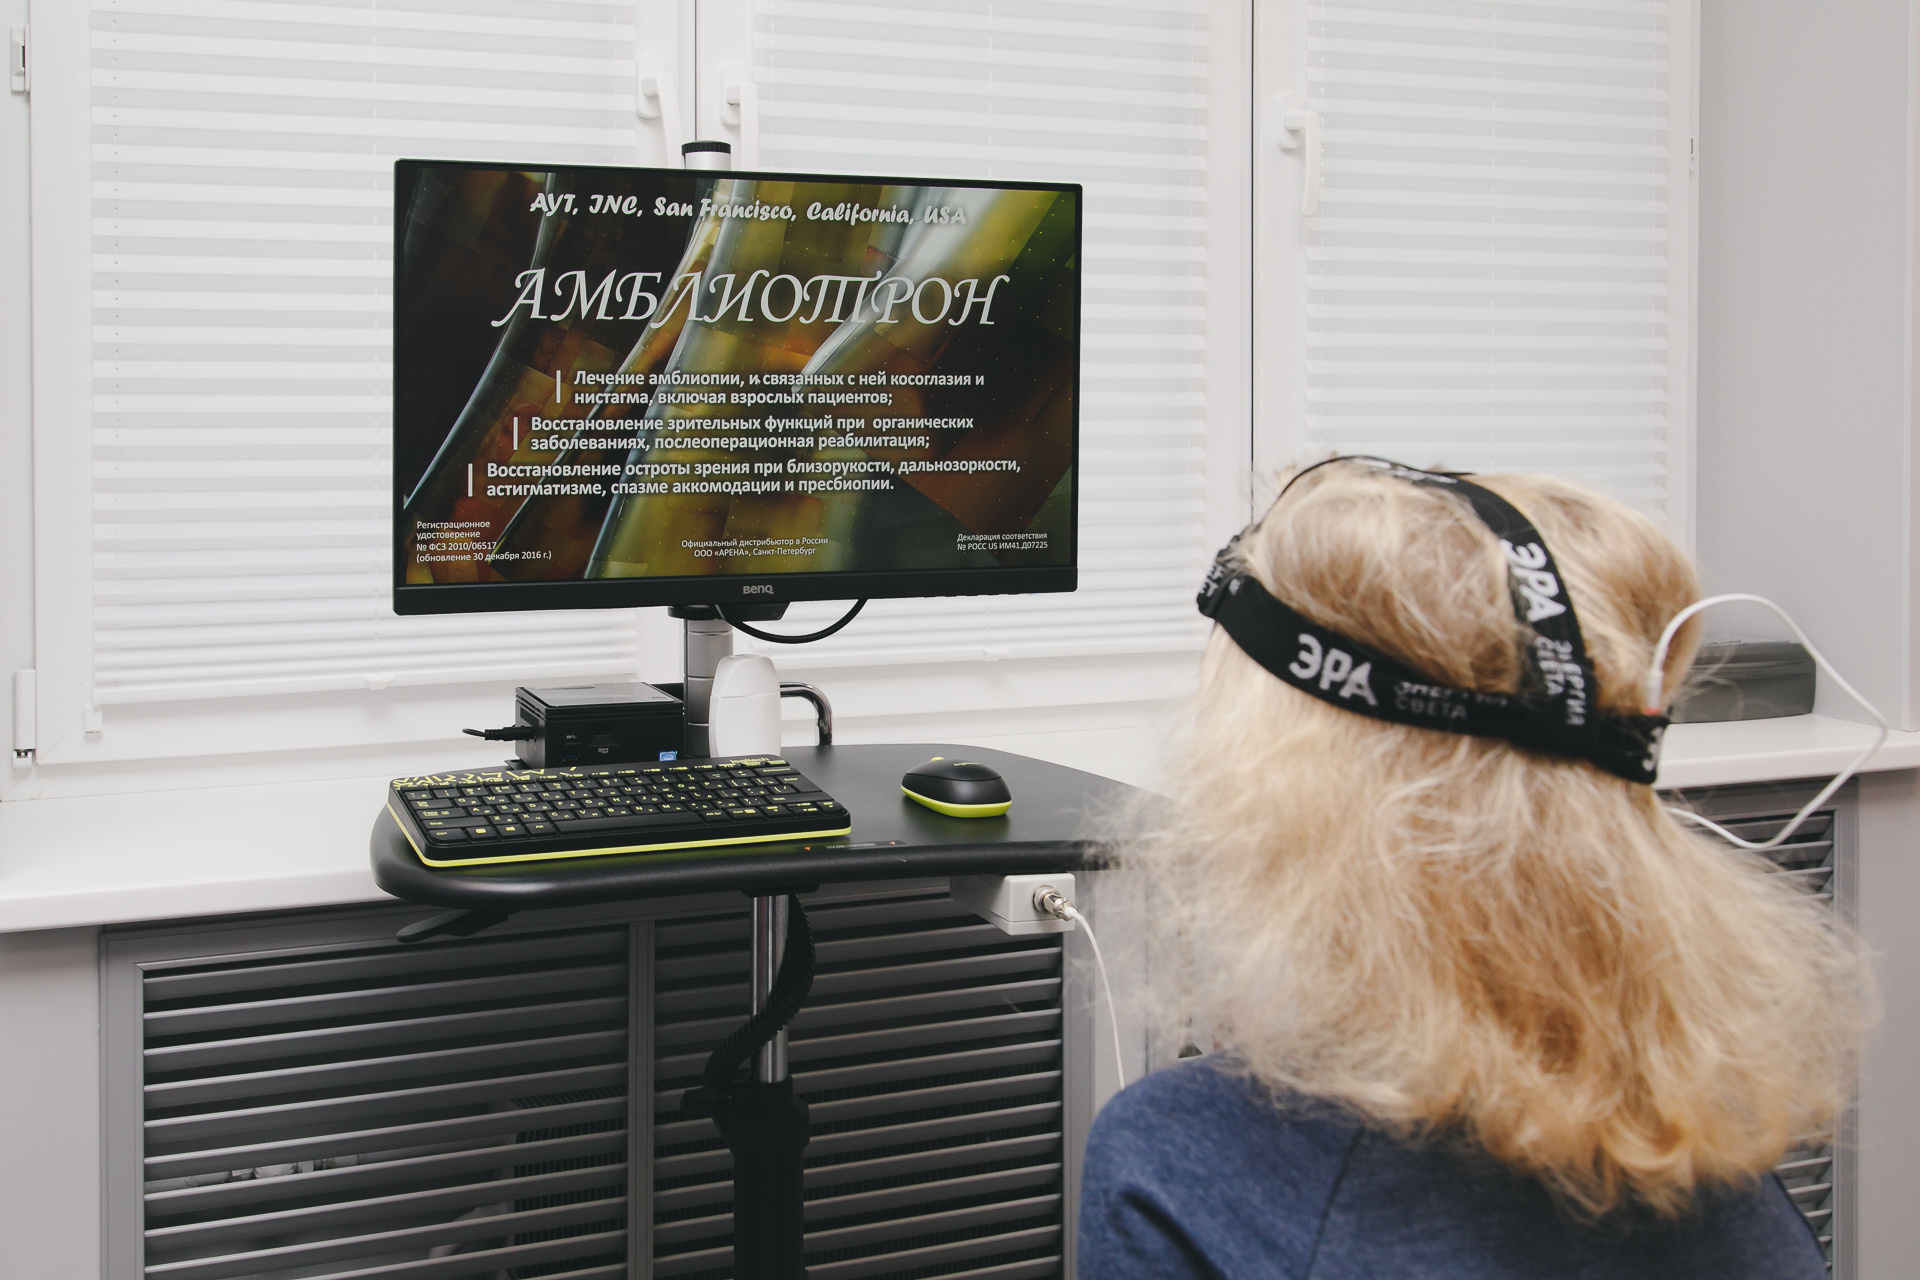 Клиника «Мединвест» оснащена самым современным офтальмологическим оборудованием, в числе которого амблиотрон — уникальный для Челябинска прибор, предназначенный для повышения остроты зрения